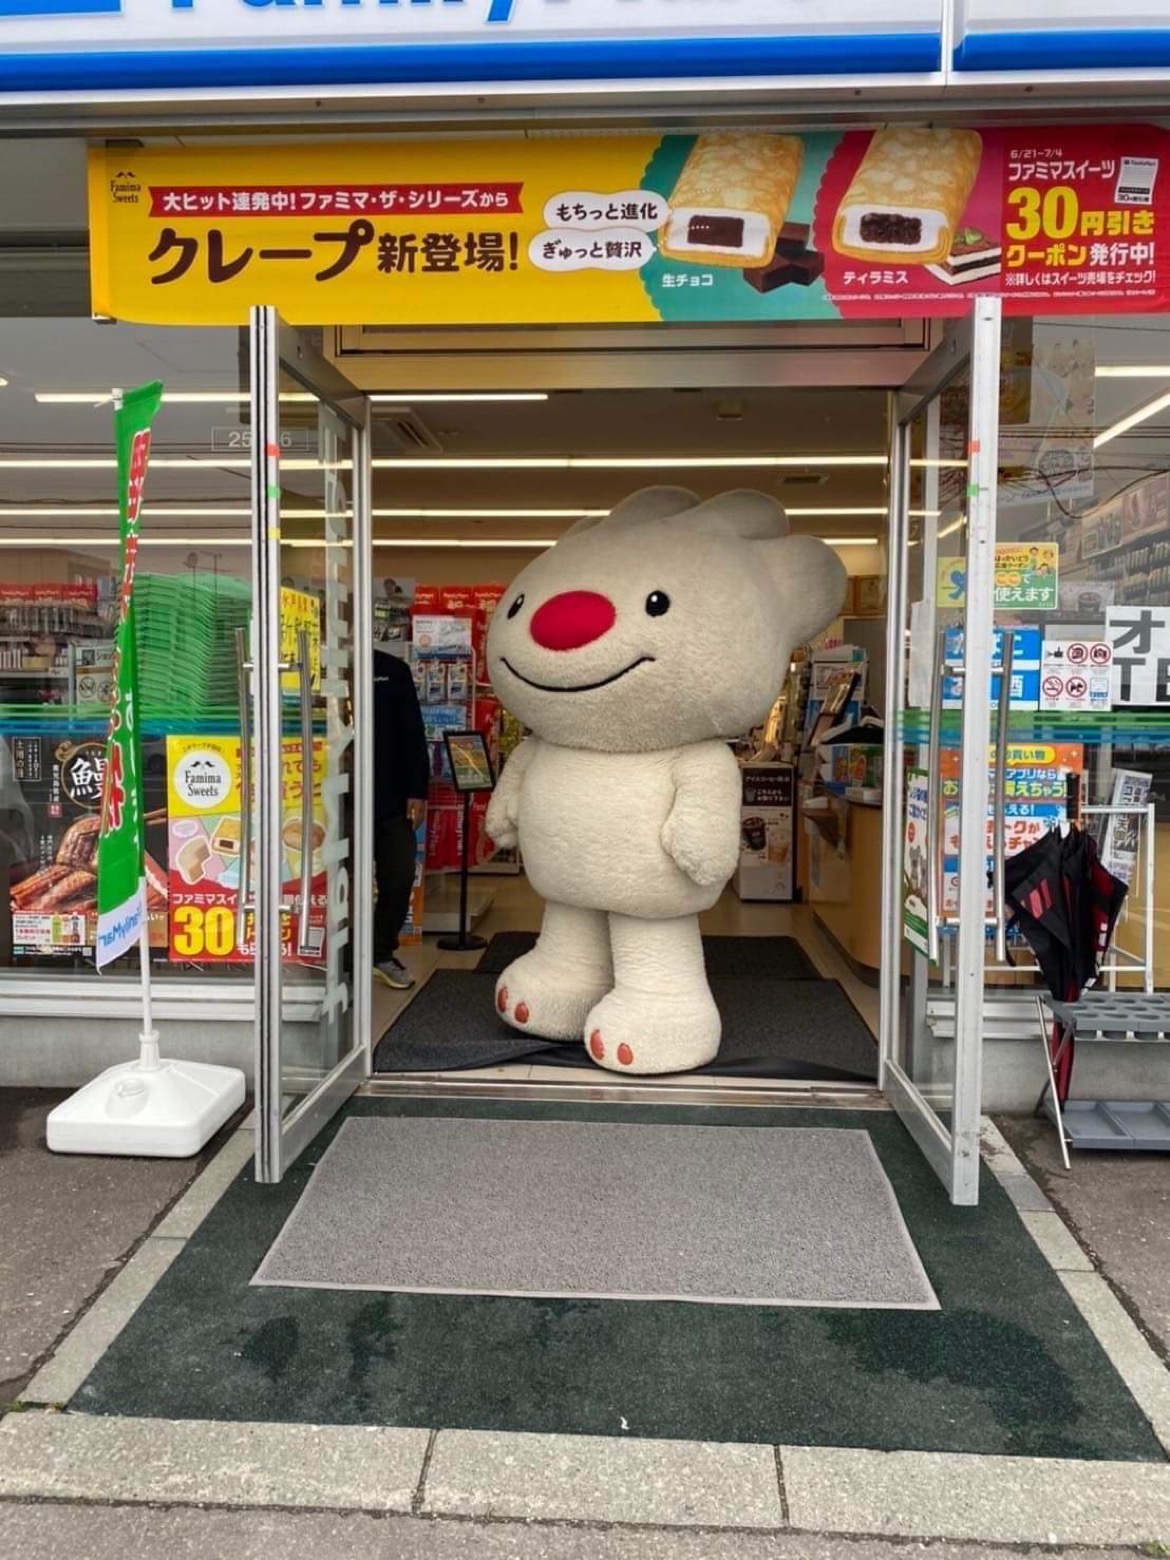 ファミリーマート札幌富丘3条店